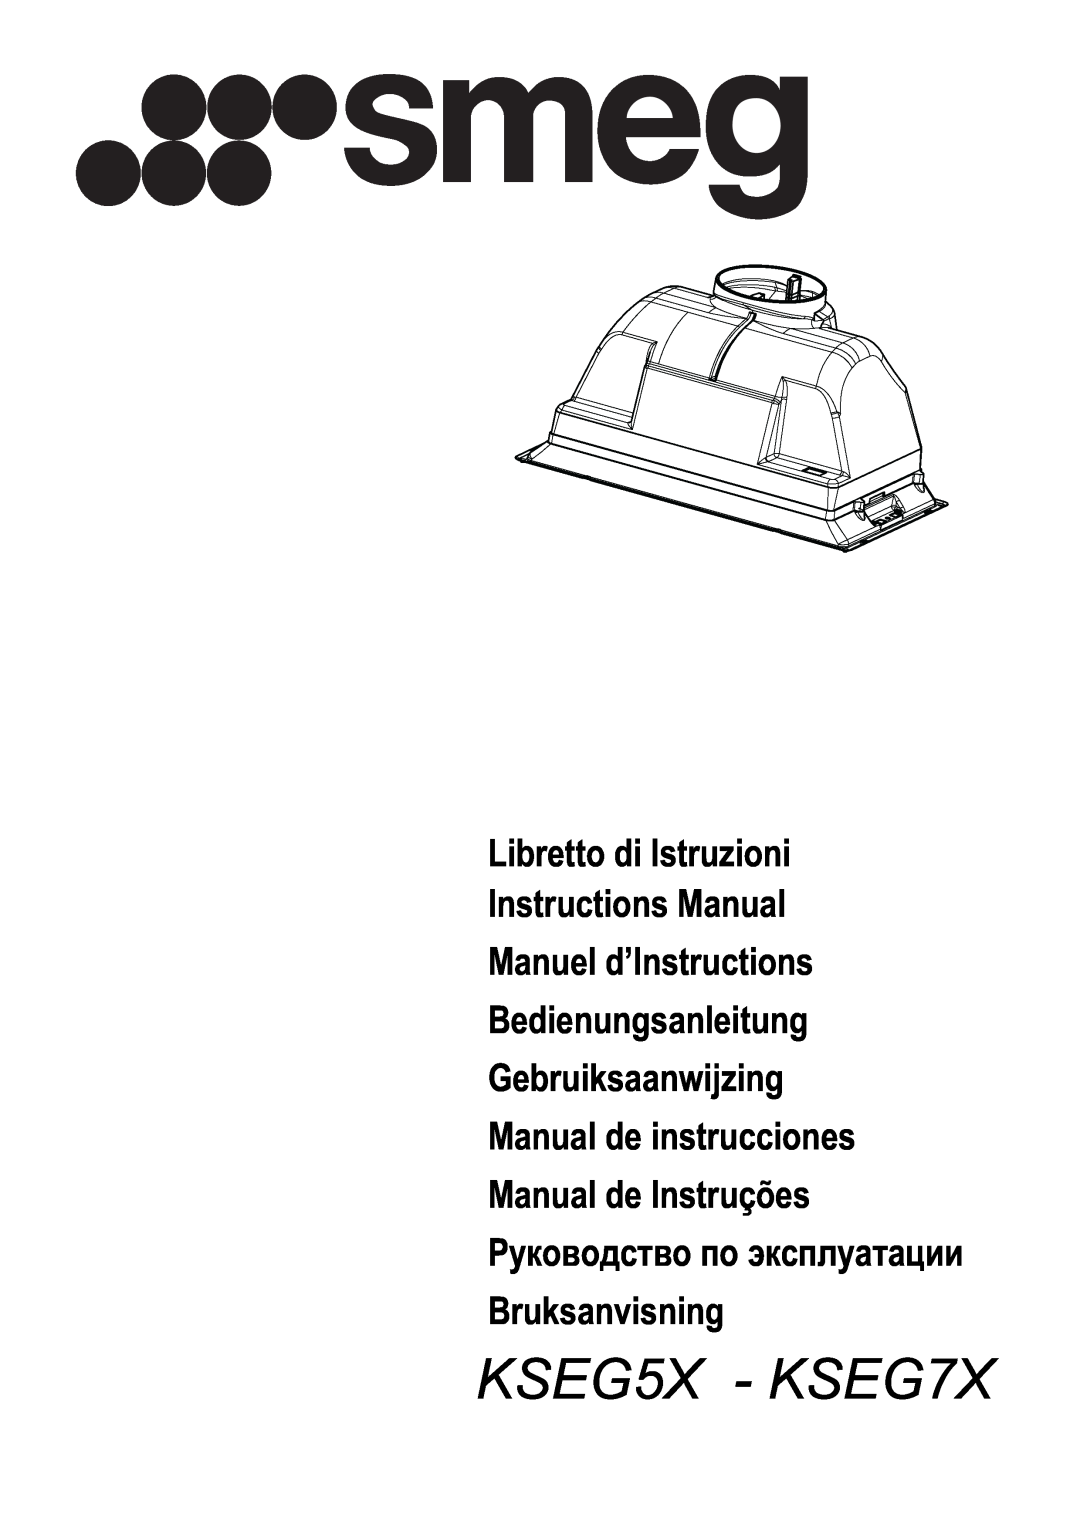 Smeg manual Libretto di Istruzioni Instructions Manual Manuel d’Instructions, KSEG5X - KSEG7X 